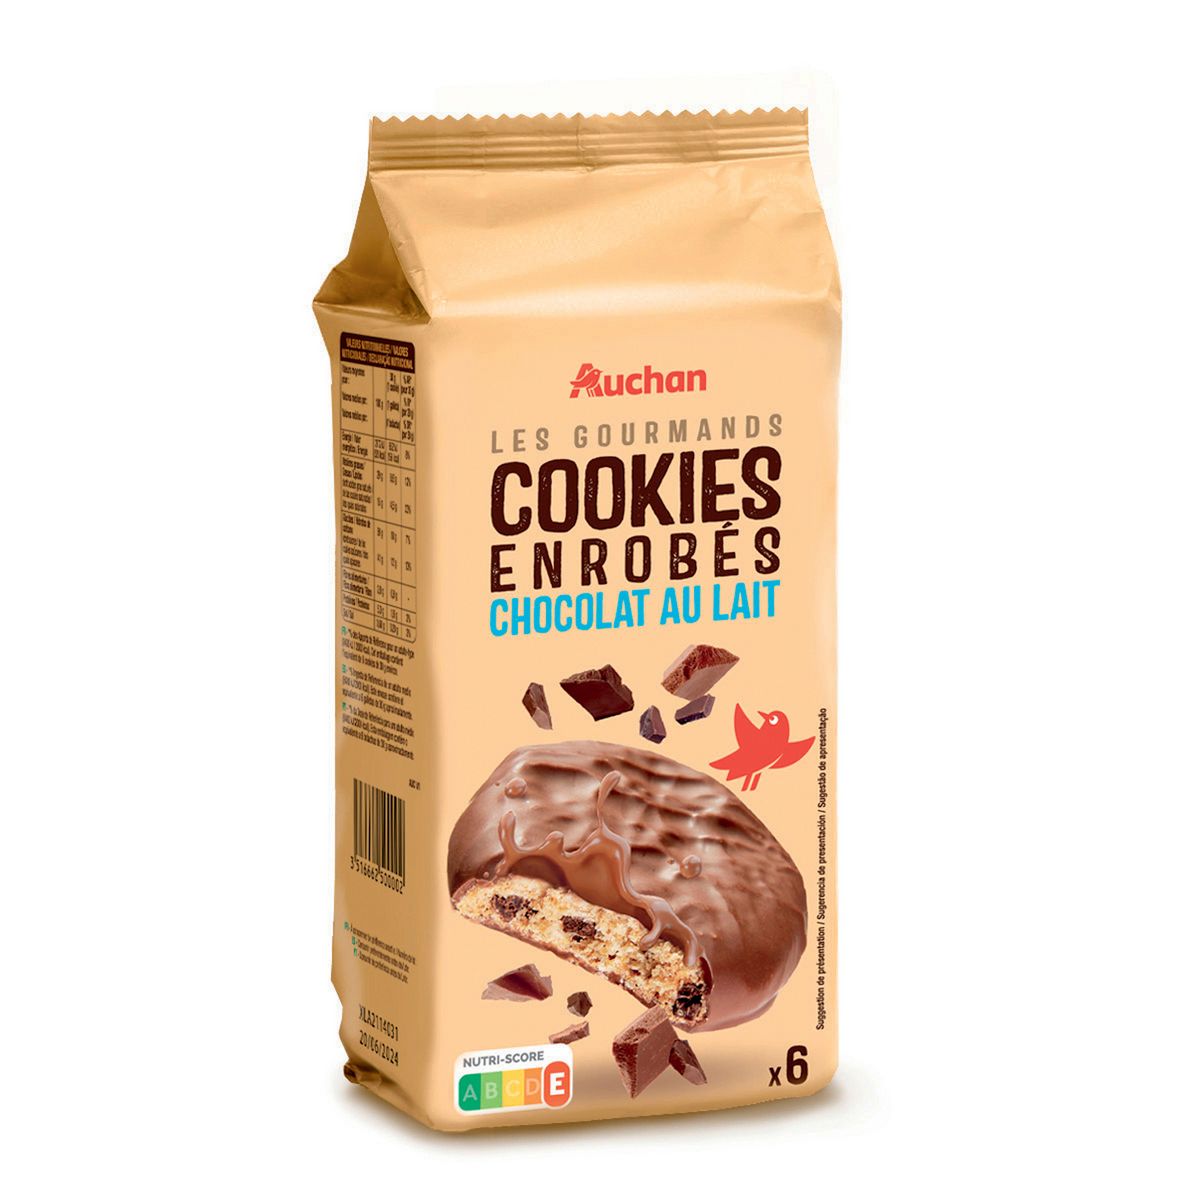 AUCHAN Cookies enrobés de chocolat au lait 6 pièces 180g